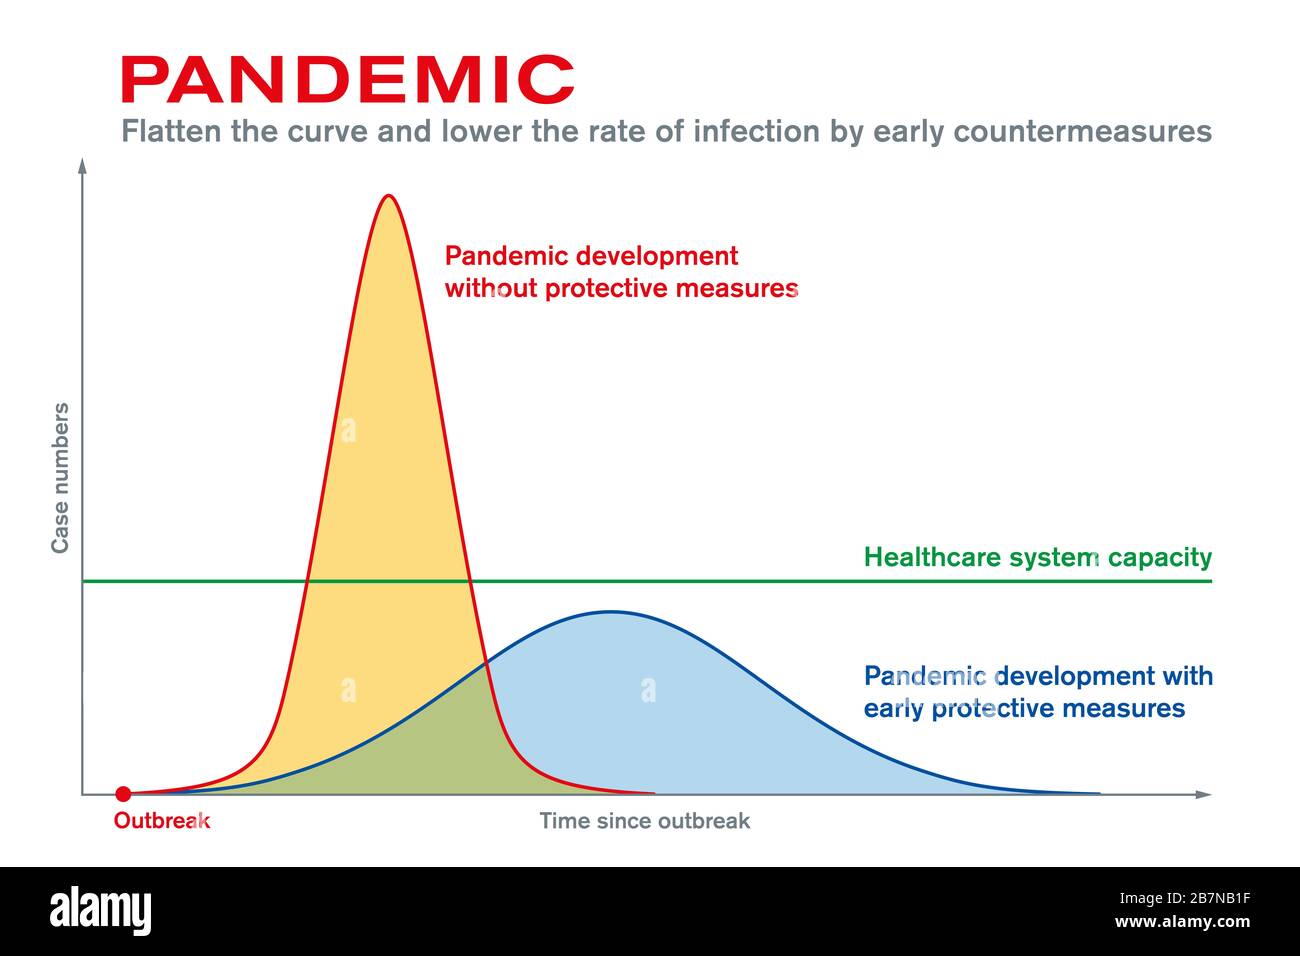 Pandemie. Reduzieren Sie die Kurve, und senken Sie die Infektionsrate durch frühe Gegenmaßnahmen. Schutzmaßnahmen nach Ausbruch des Ausbruchs halten das Gesundheitssystem aufrecht. Stockfoto